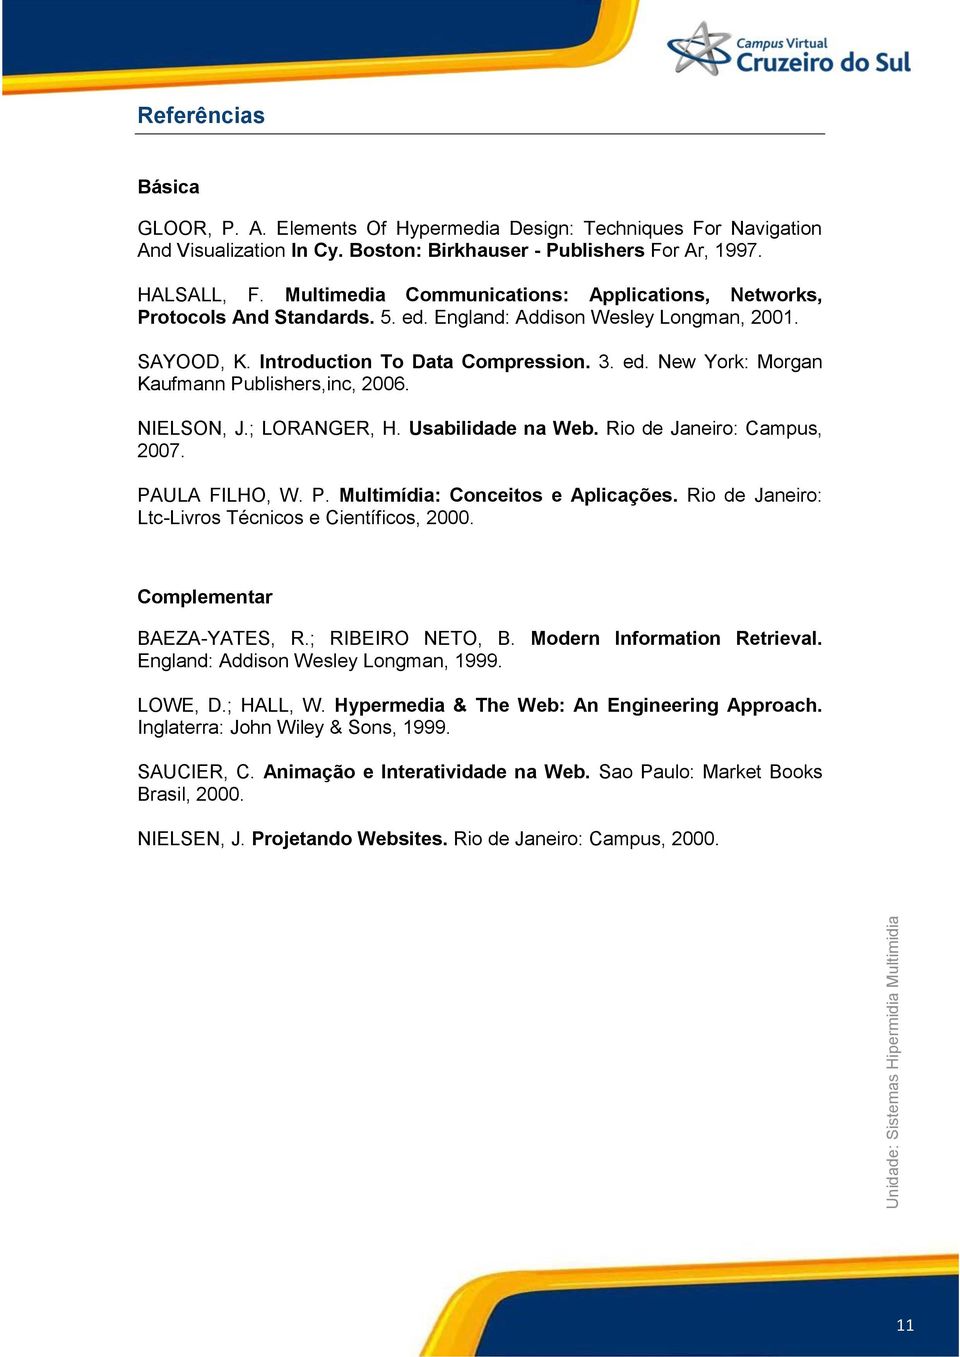 NIELSON, J.; LORANGER, H. Usabilidade na Web. Rio de Janeiro: Campus, 2007. PAULA FILHO, W. P. Multimídia: Conceitos e Aplicações. Rio de Janeiro: Ltc-Livros Técnicos e Científicos, 2000.